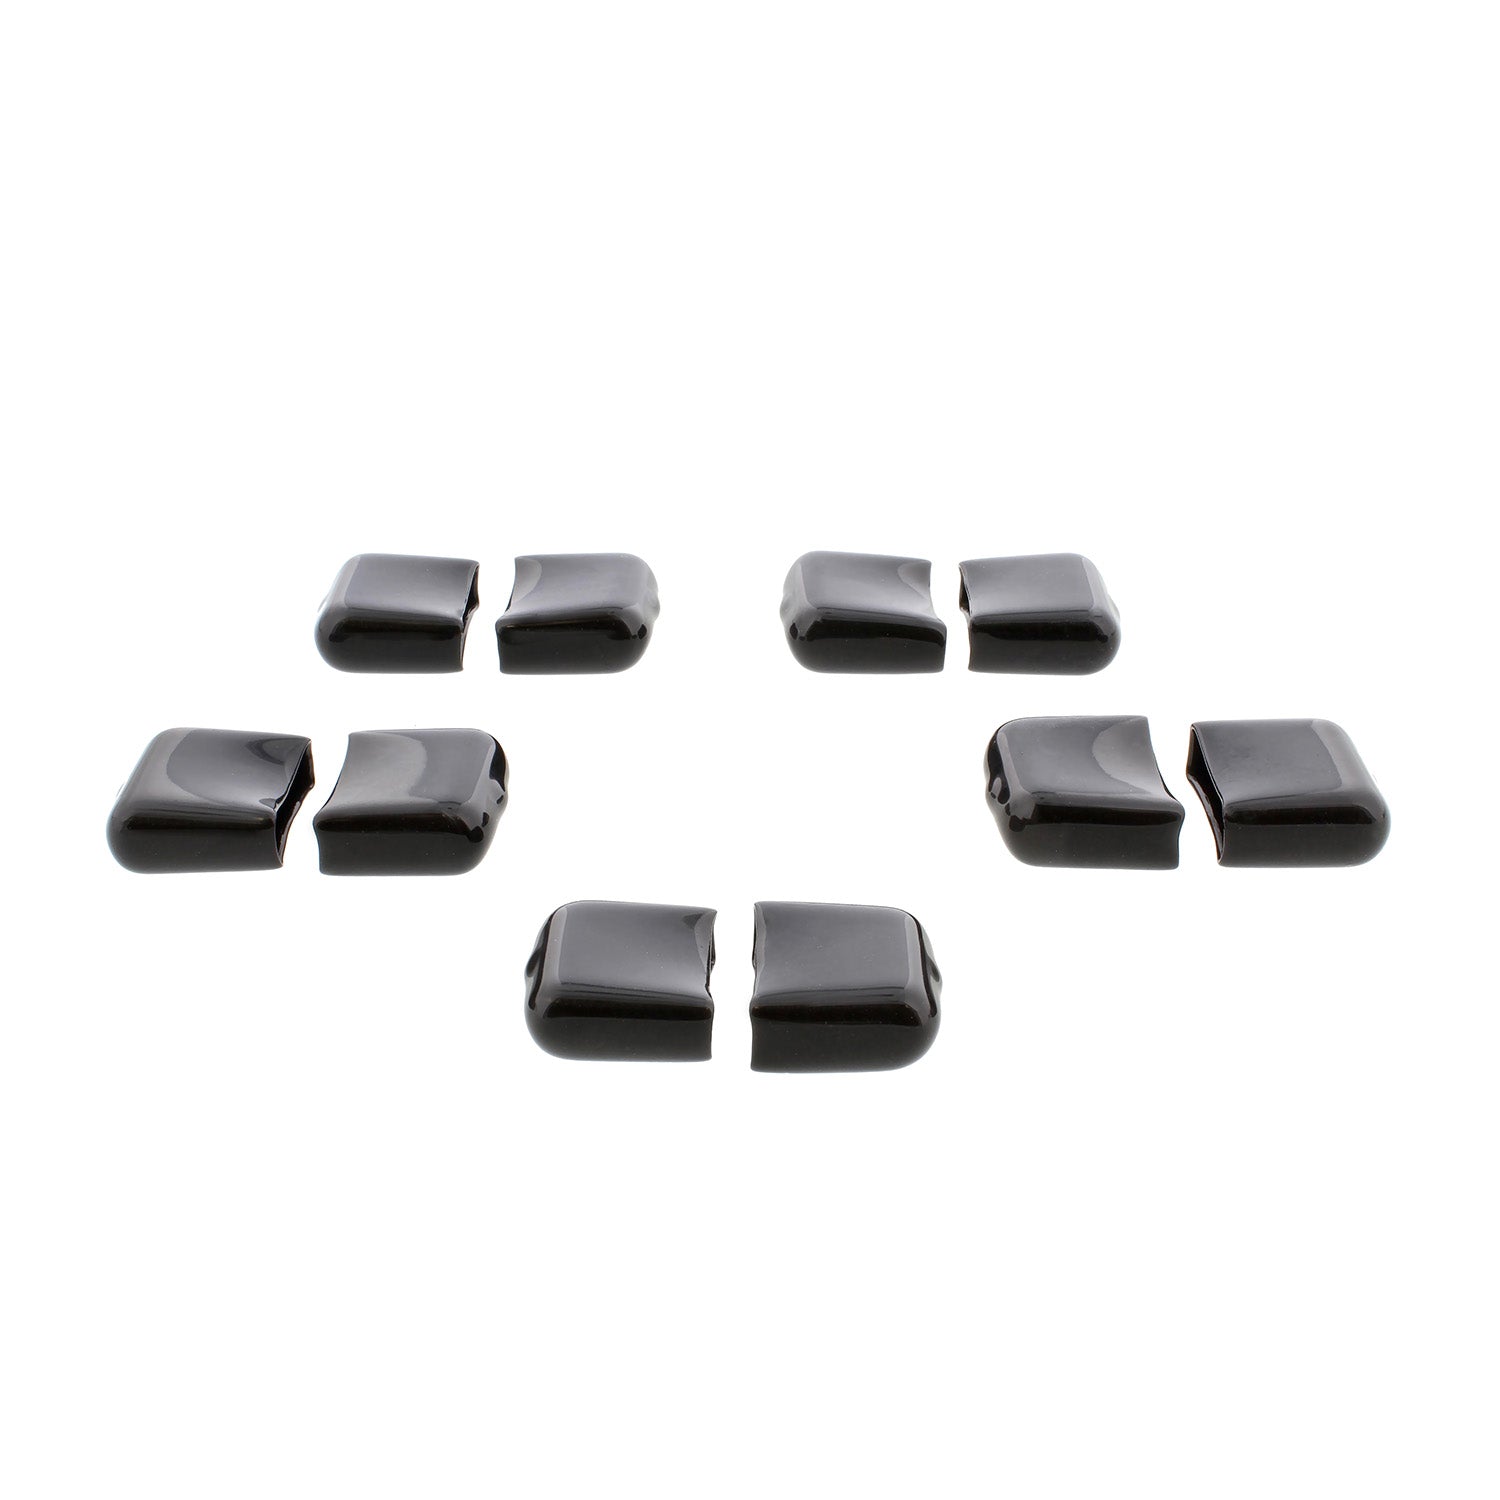 End Caps for Socket Rail Set Aluminum Socket Holder Caps Only 10-Pack